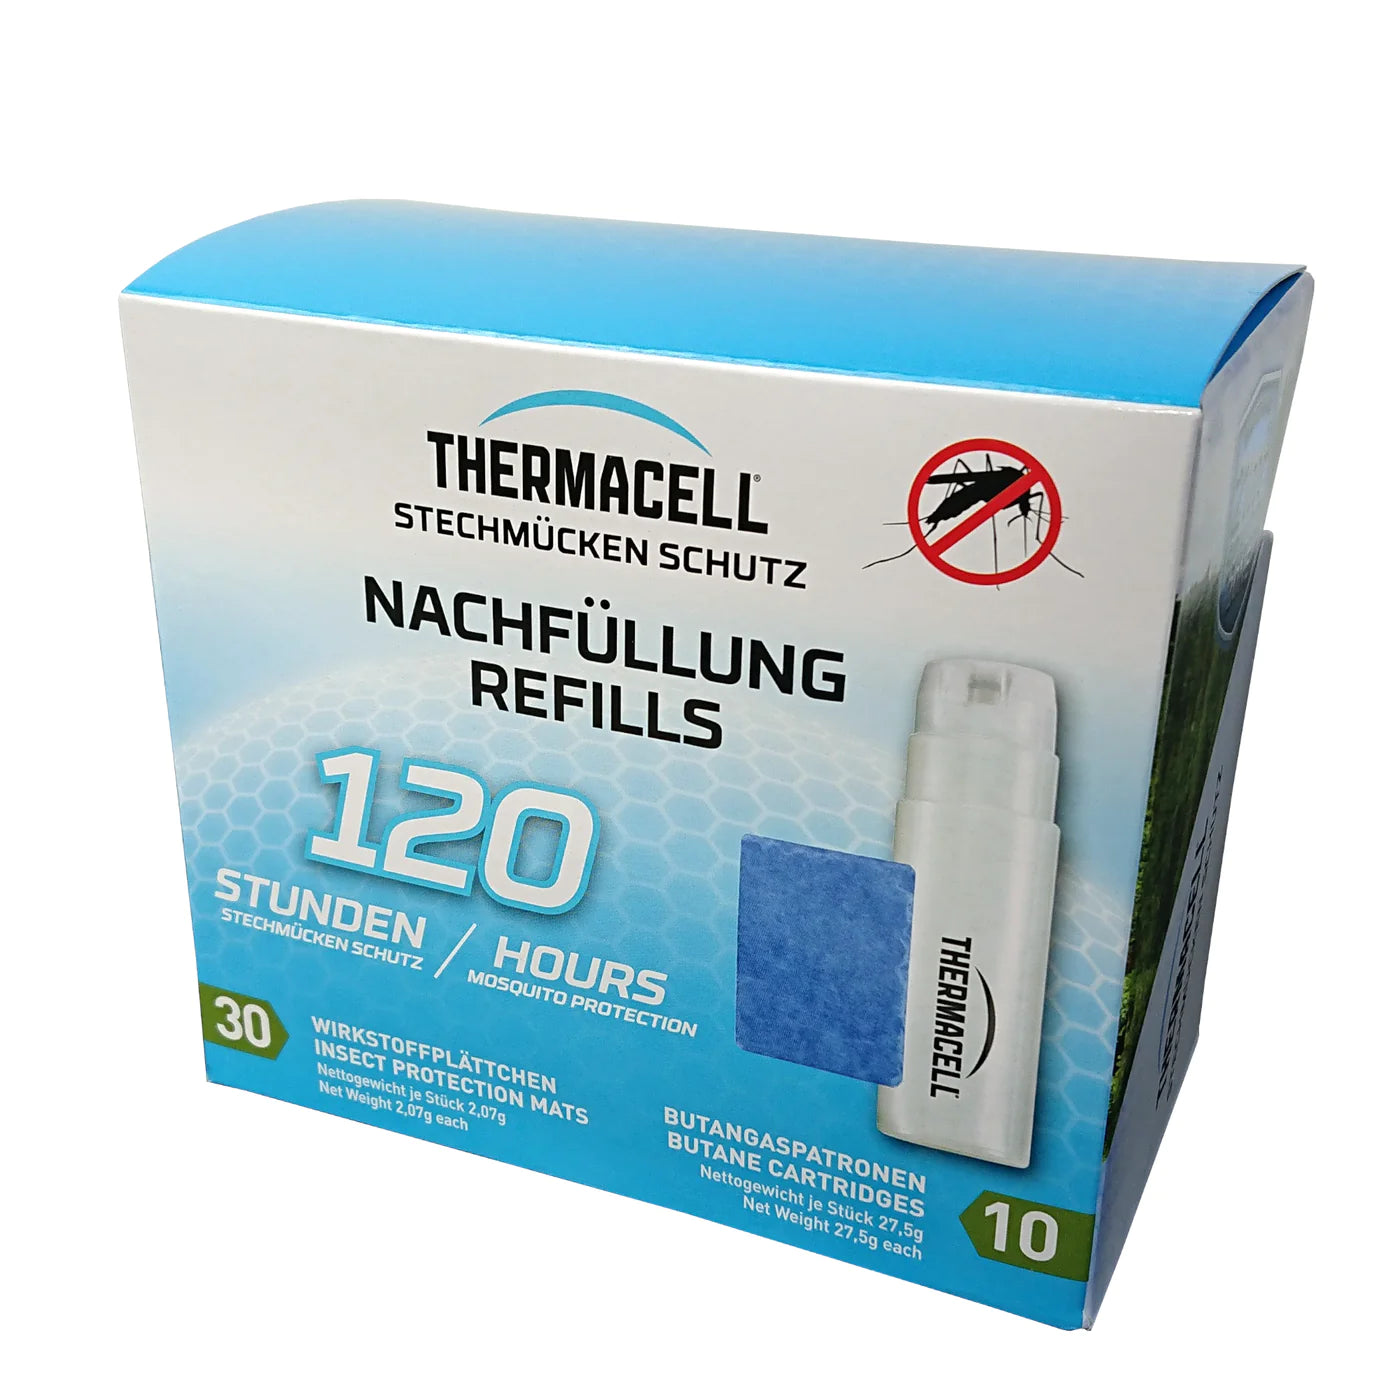 ThermaCell Mückenschutz Nachfüllpack R-10, 120 Stunden Aktivschutz